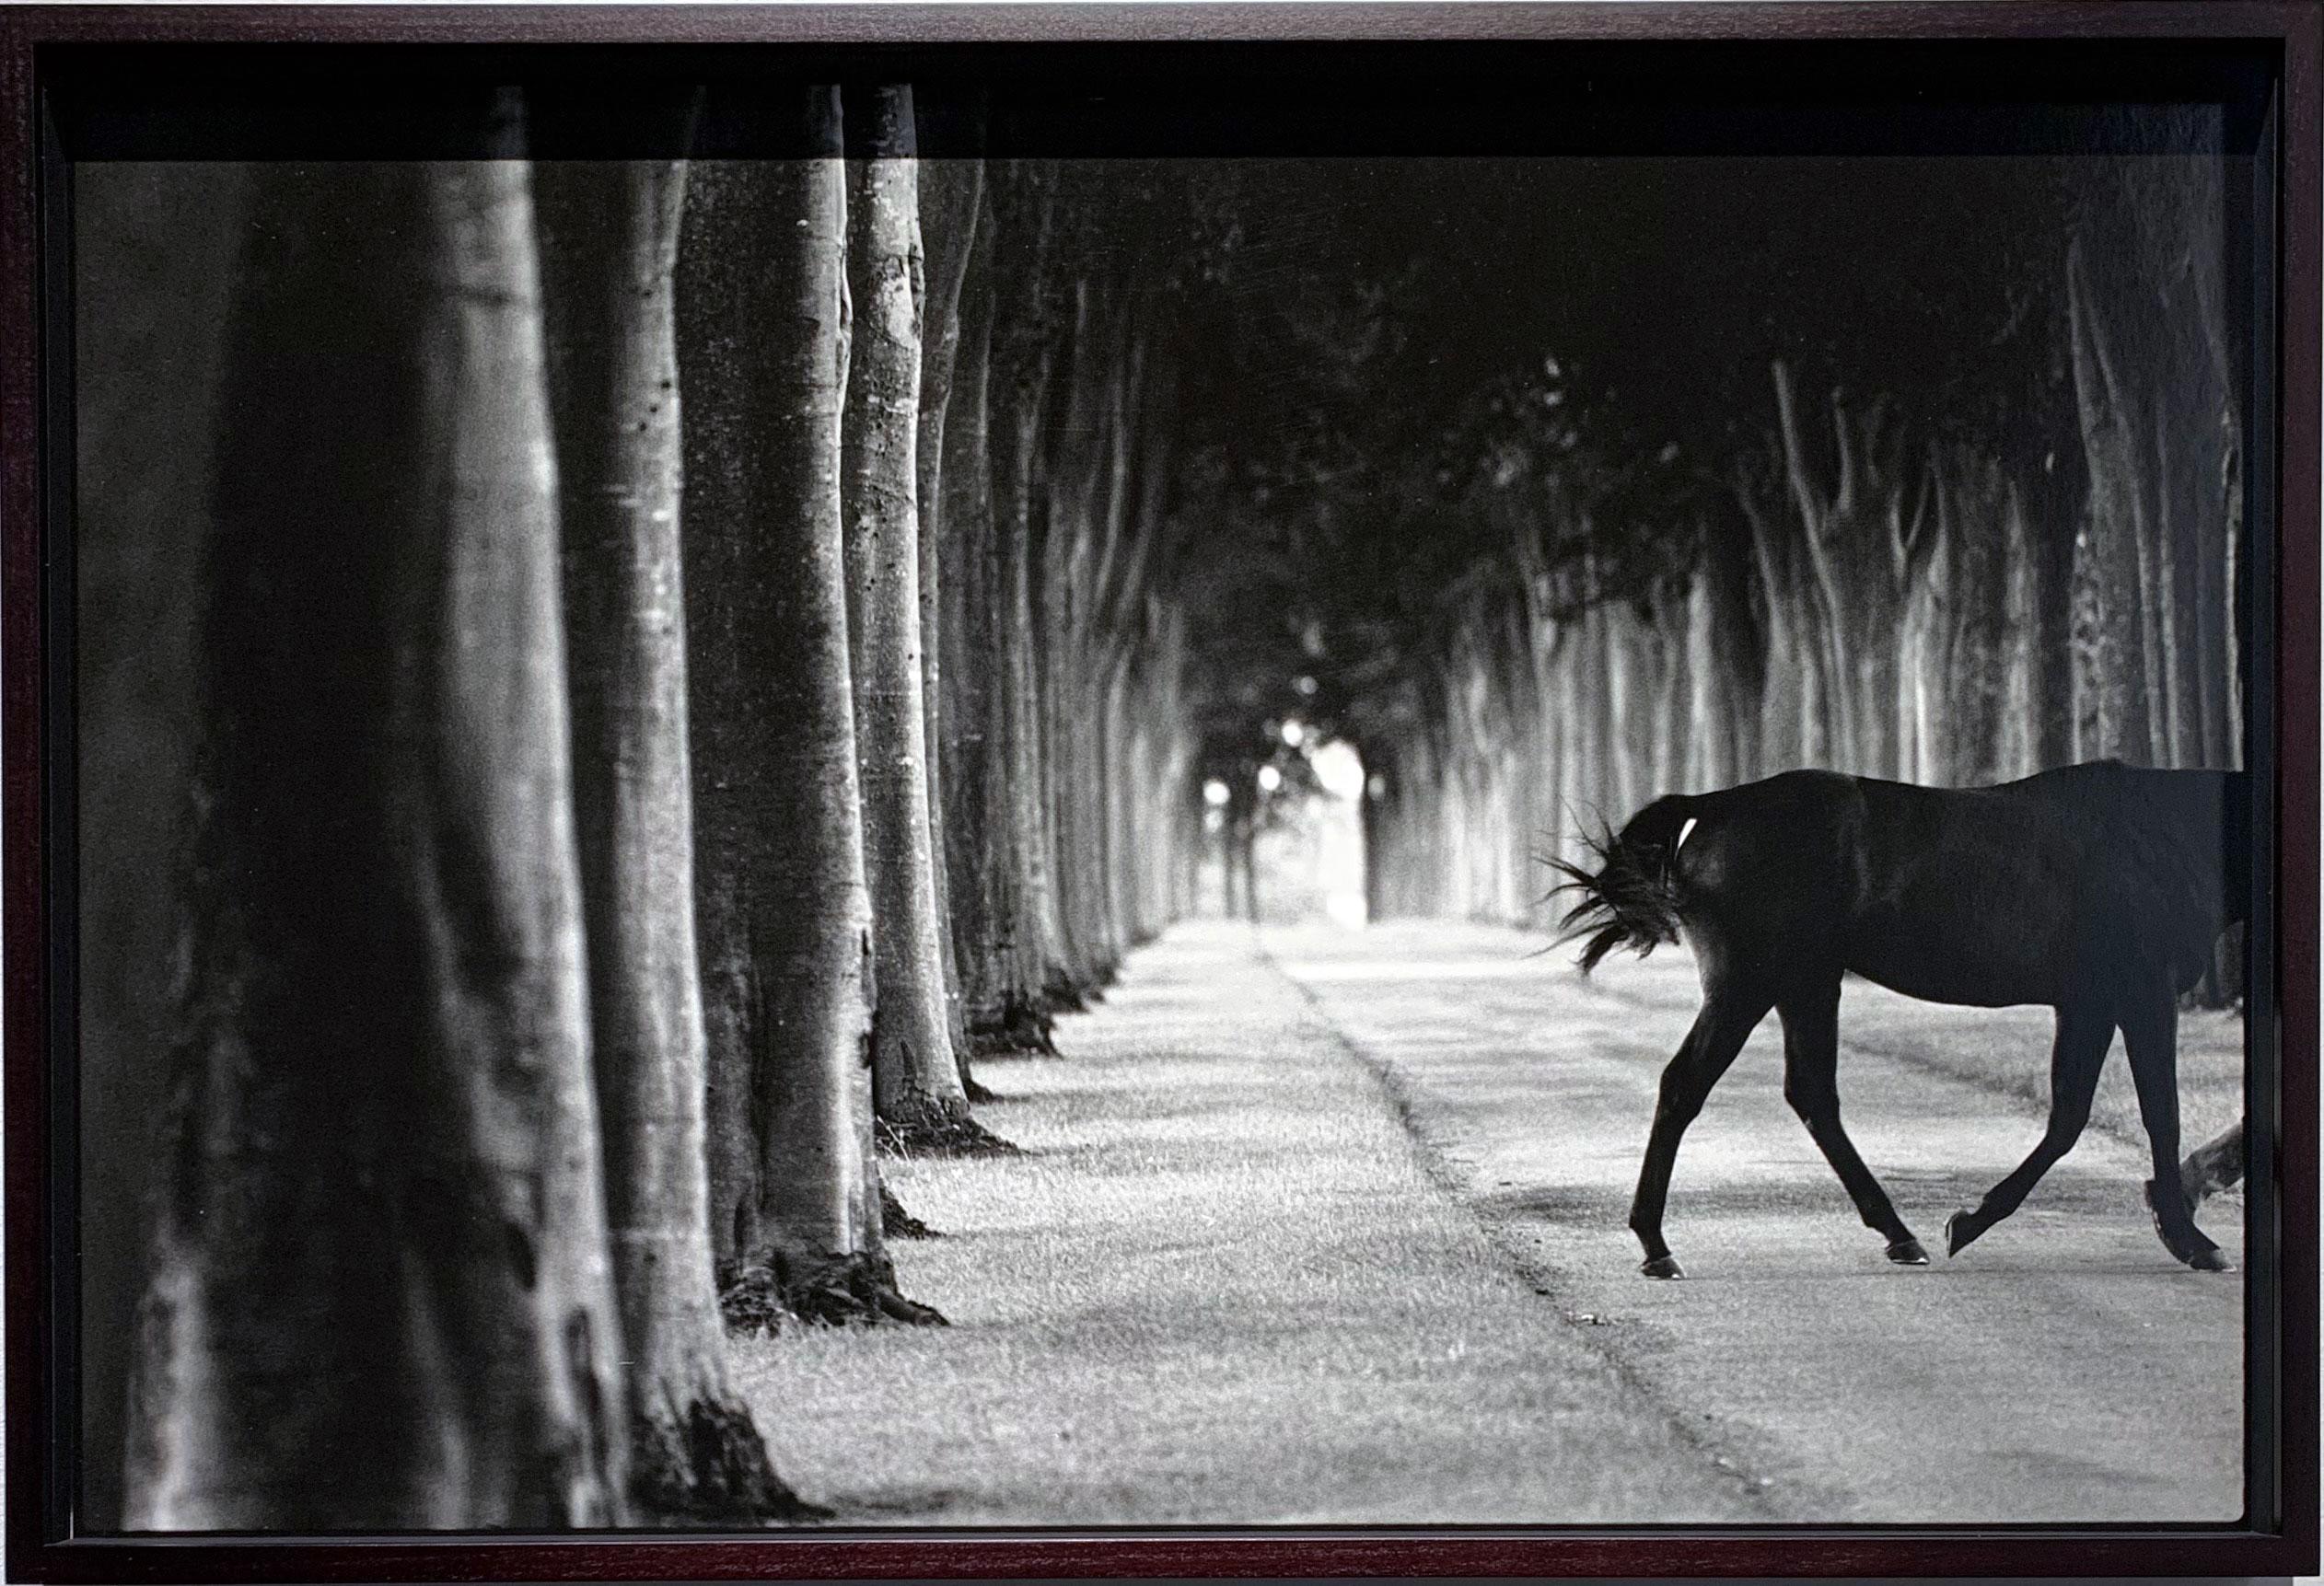 Kabool, 'Avenue of Trees', Horse Exit, Schwarz-Weiß-Landschaft und ein Hengst – Photograph von John Reardon